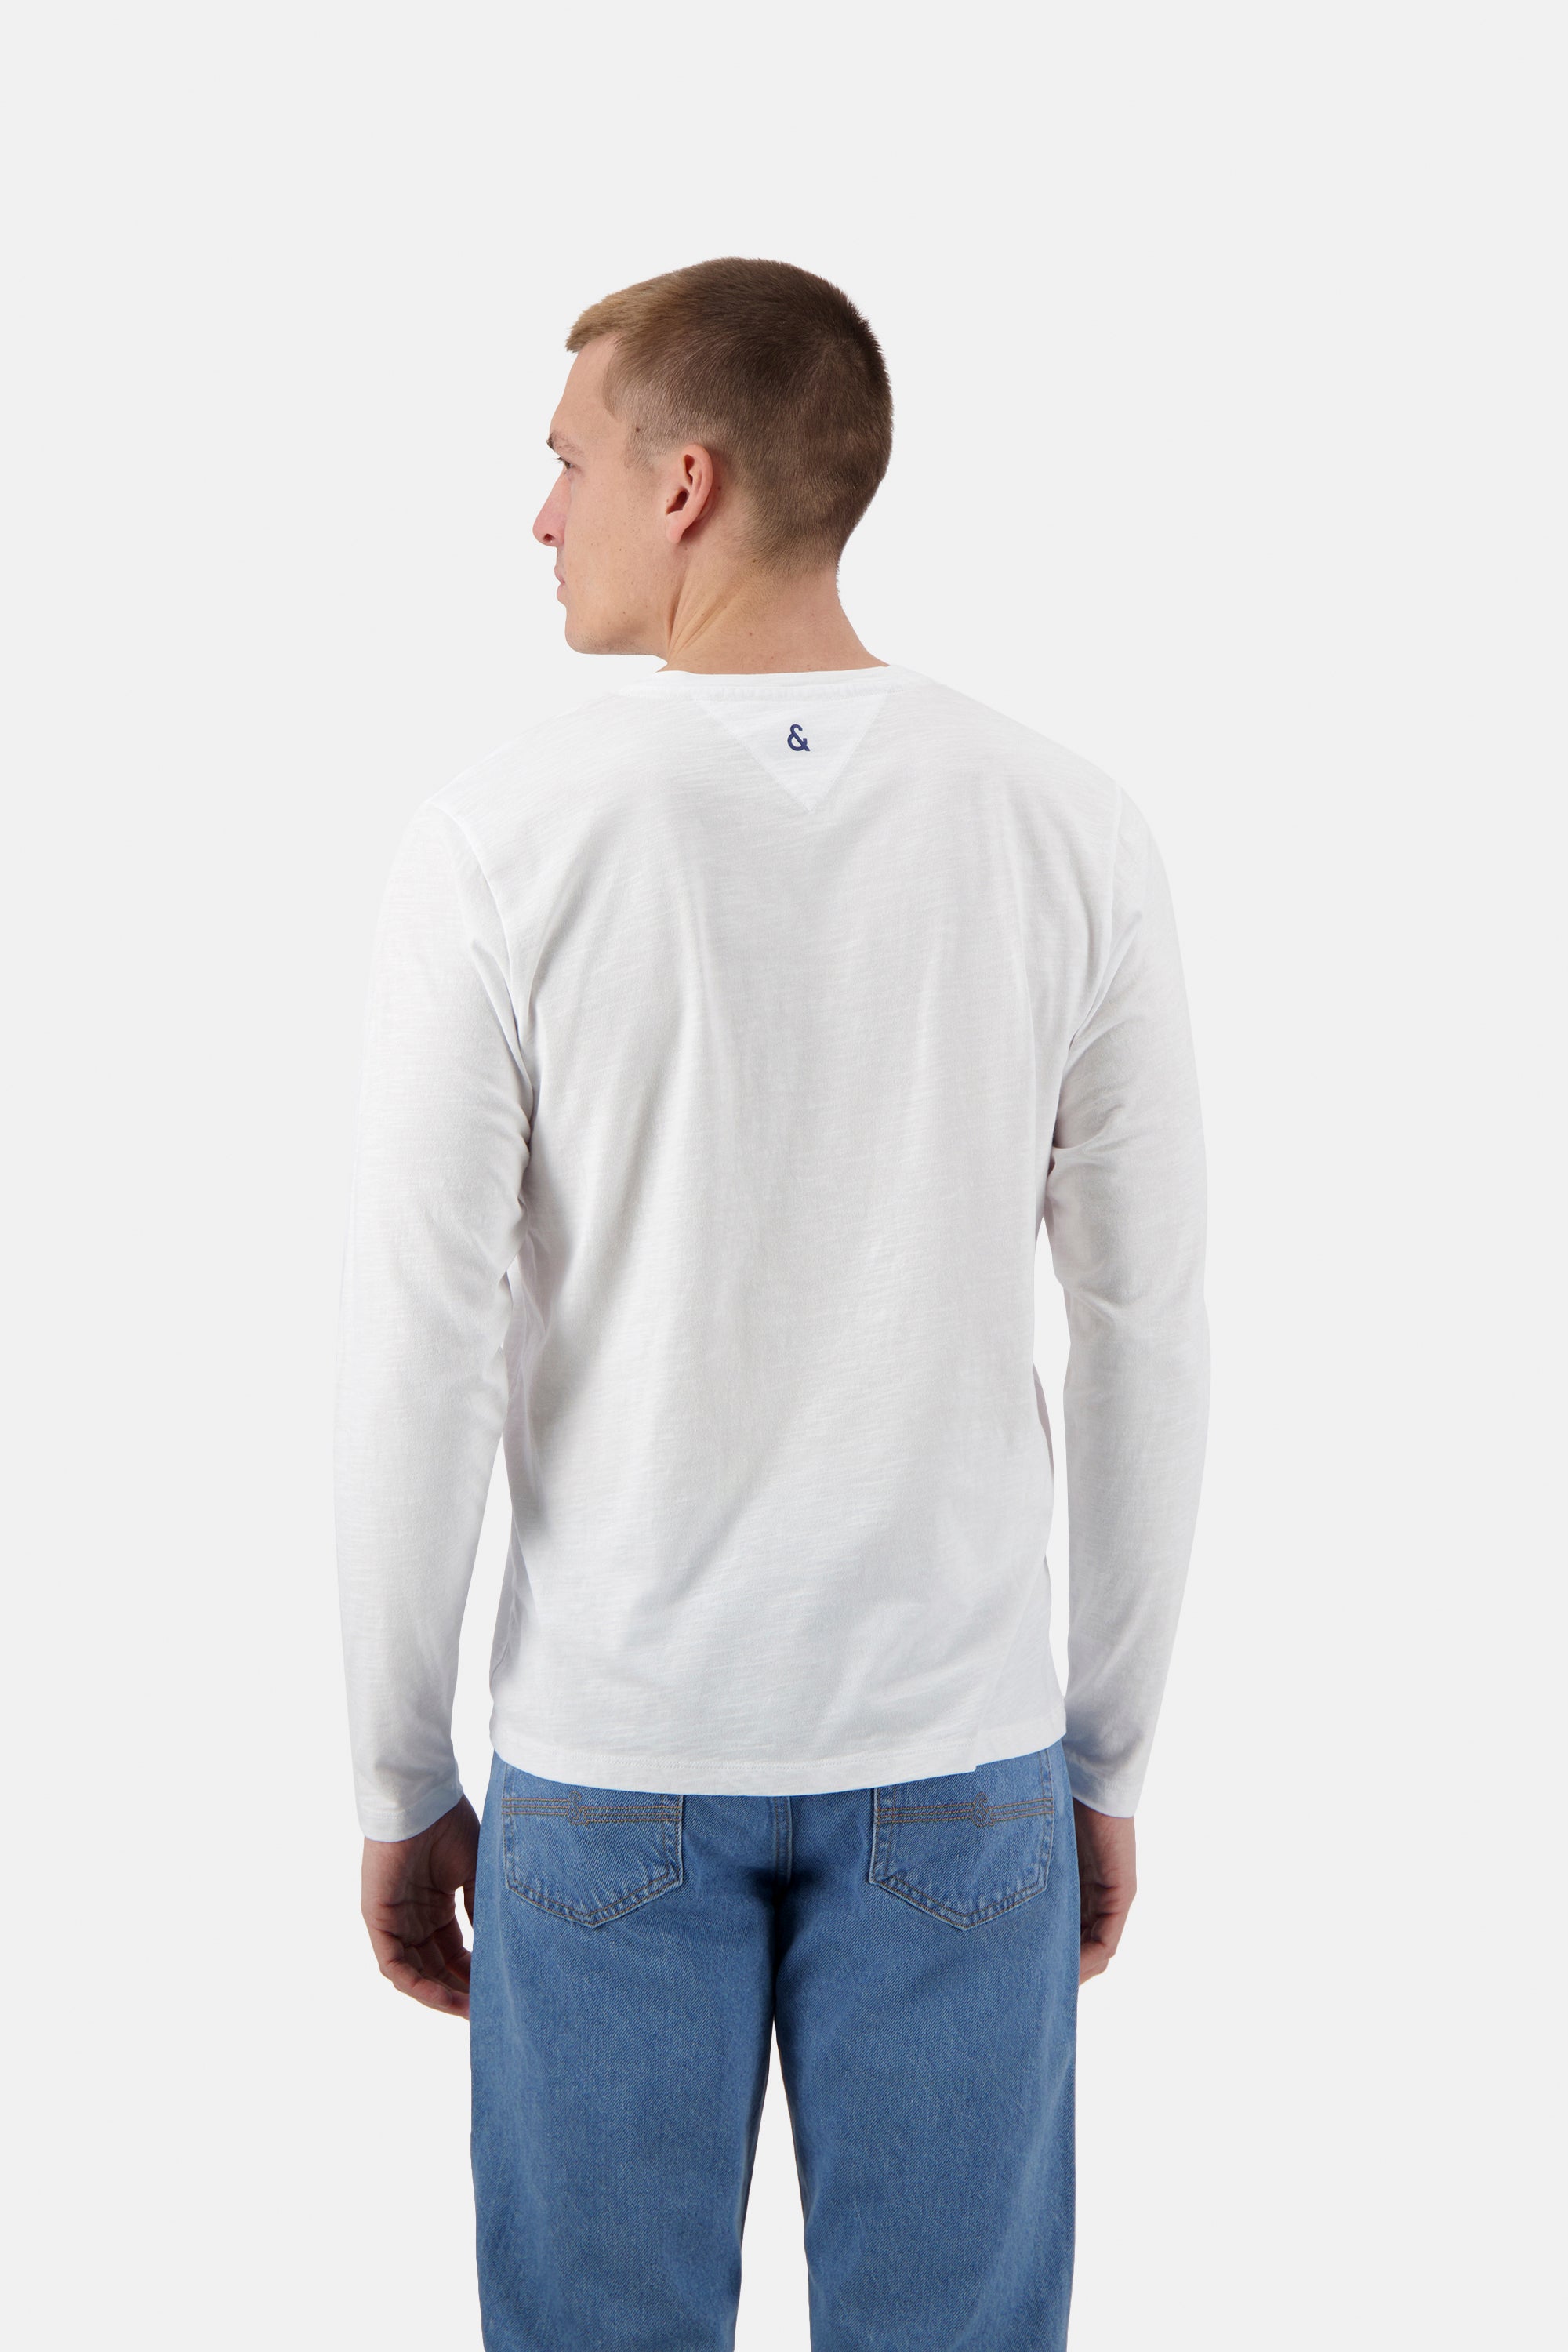 Herren Longsleeve Shirt, weiß, 100% Baumwolle von Colours & Sons